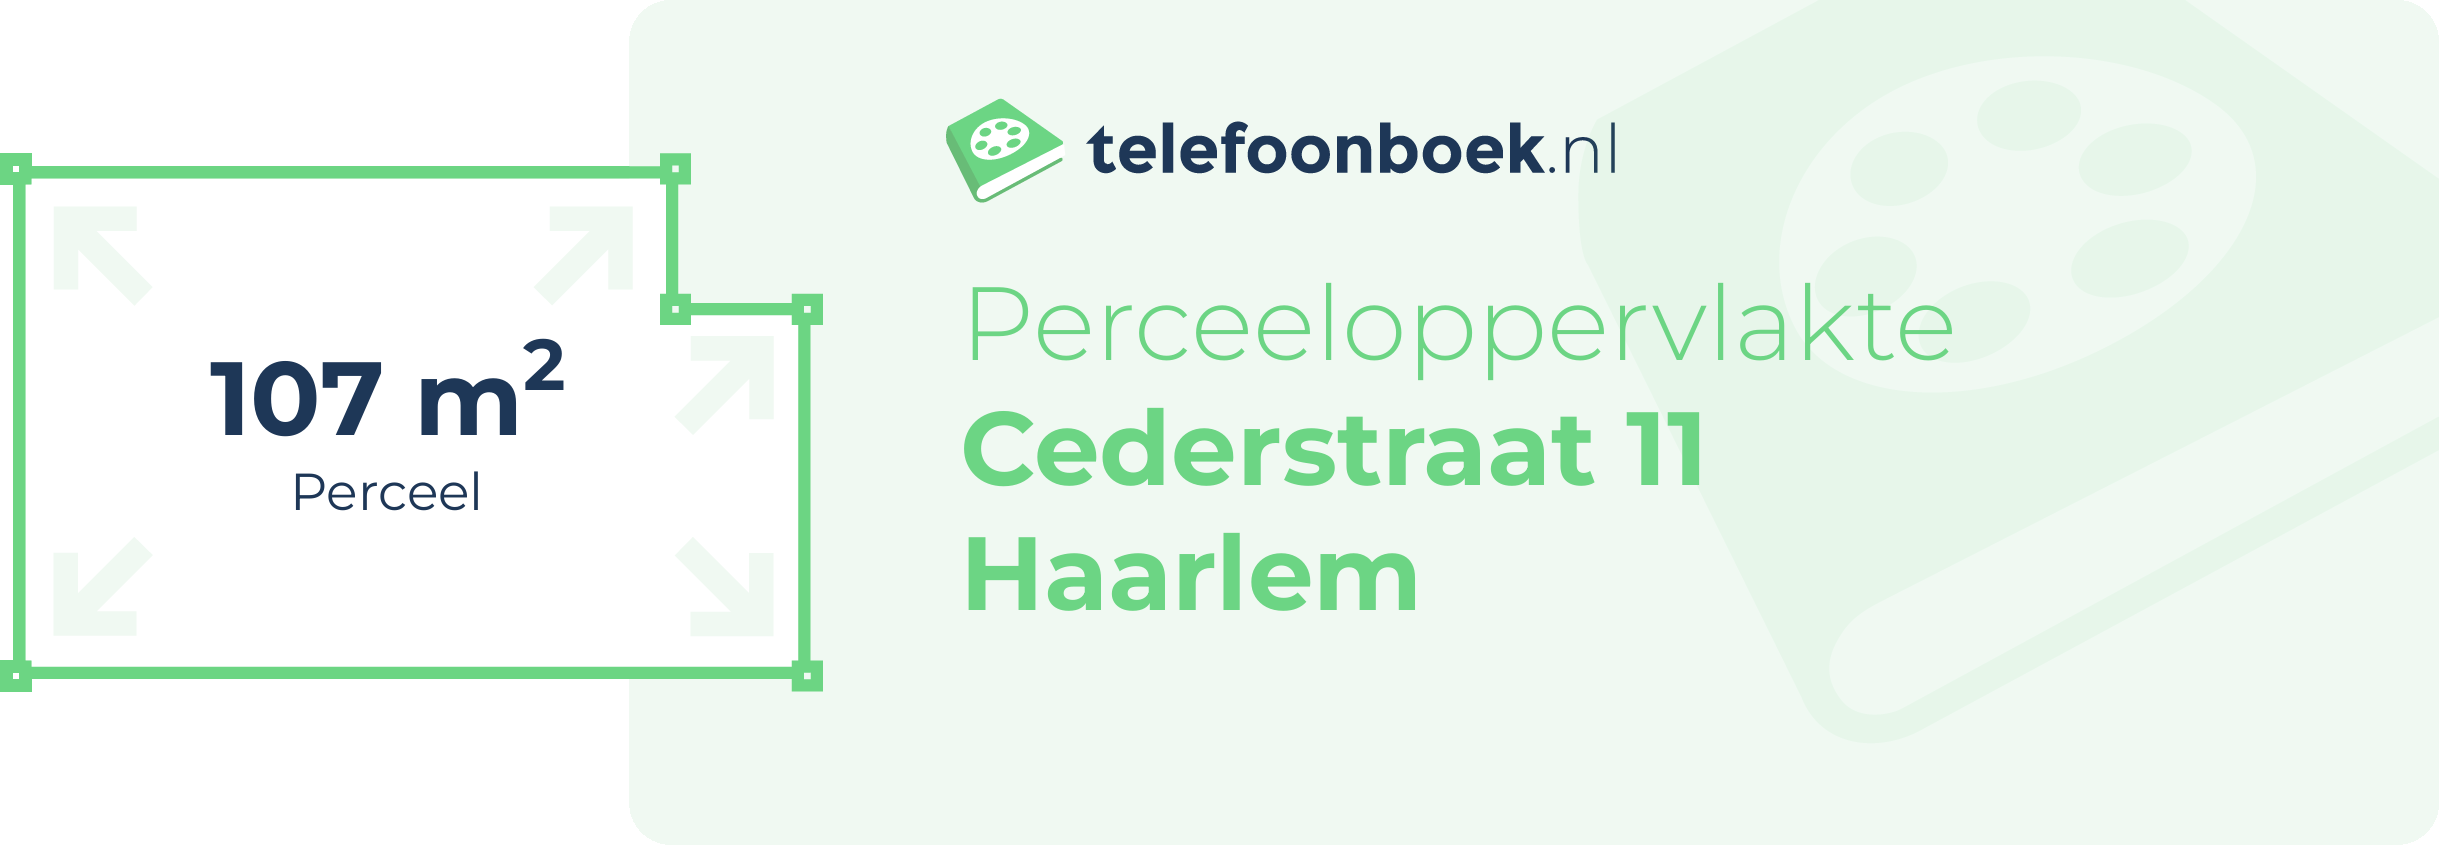 Perceeloppervlakte Cederstraat 11 Haarlem